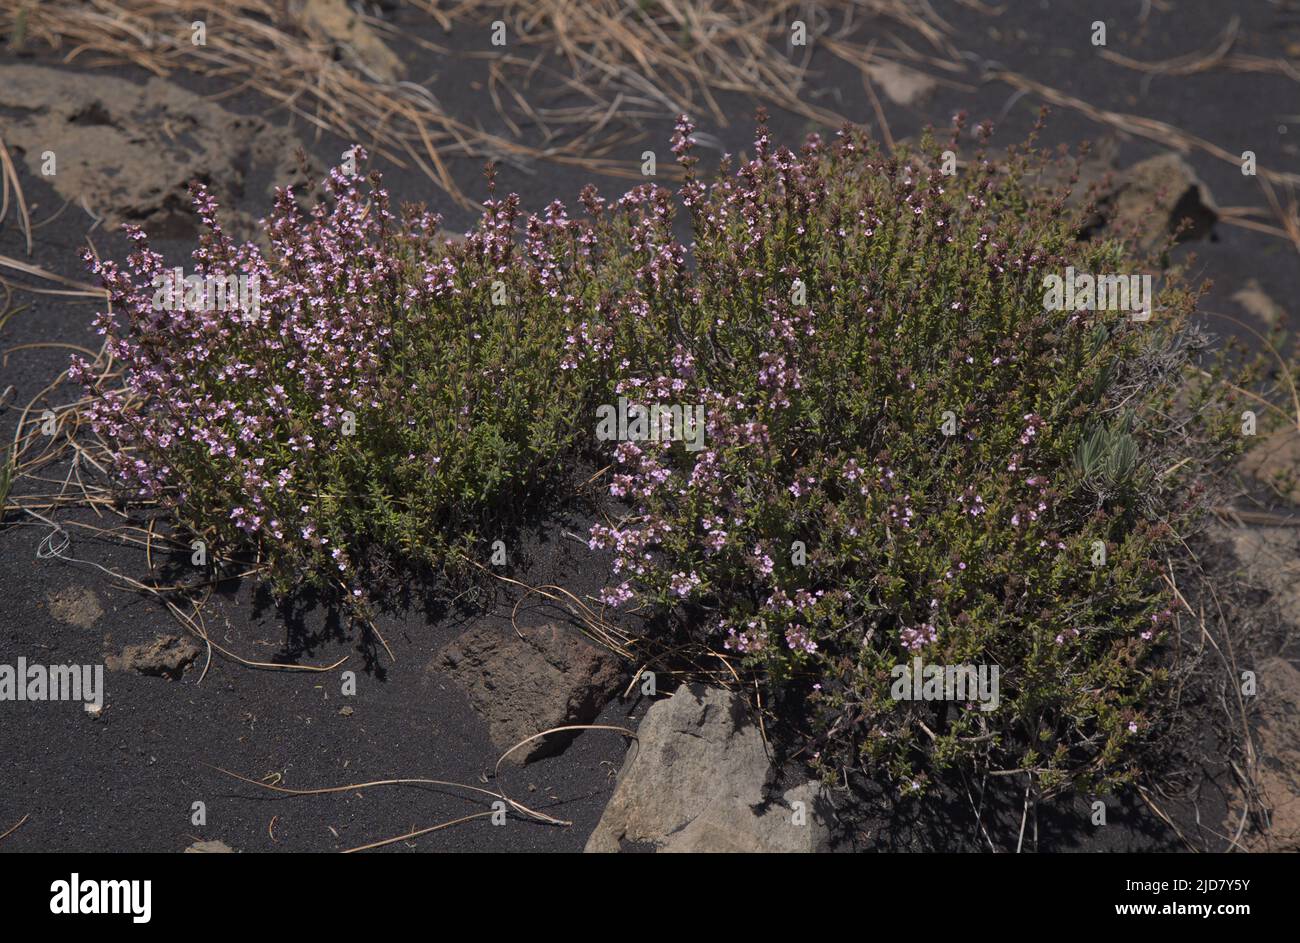 Flora de La Palma - Hierba de Micromeria, llamada tomillo, endémica de Canarias y Madeira, que crece en racimos en cenizas volcánicas negras Foto de stock